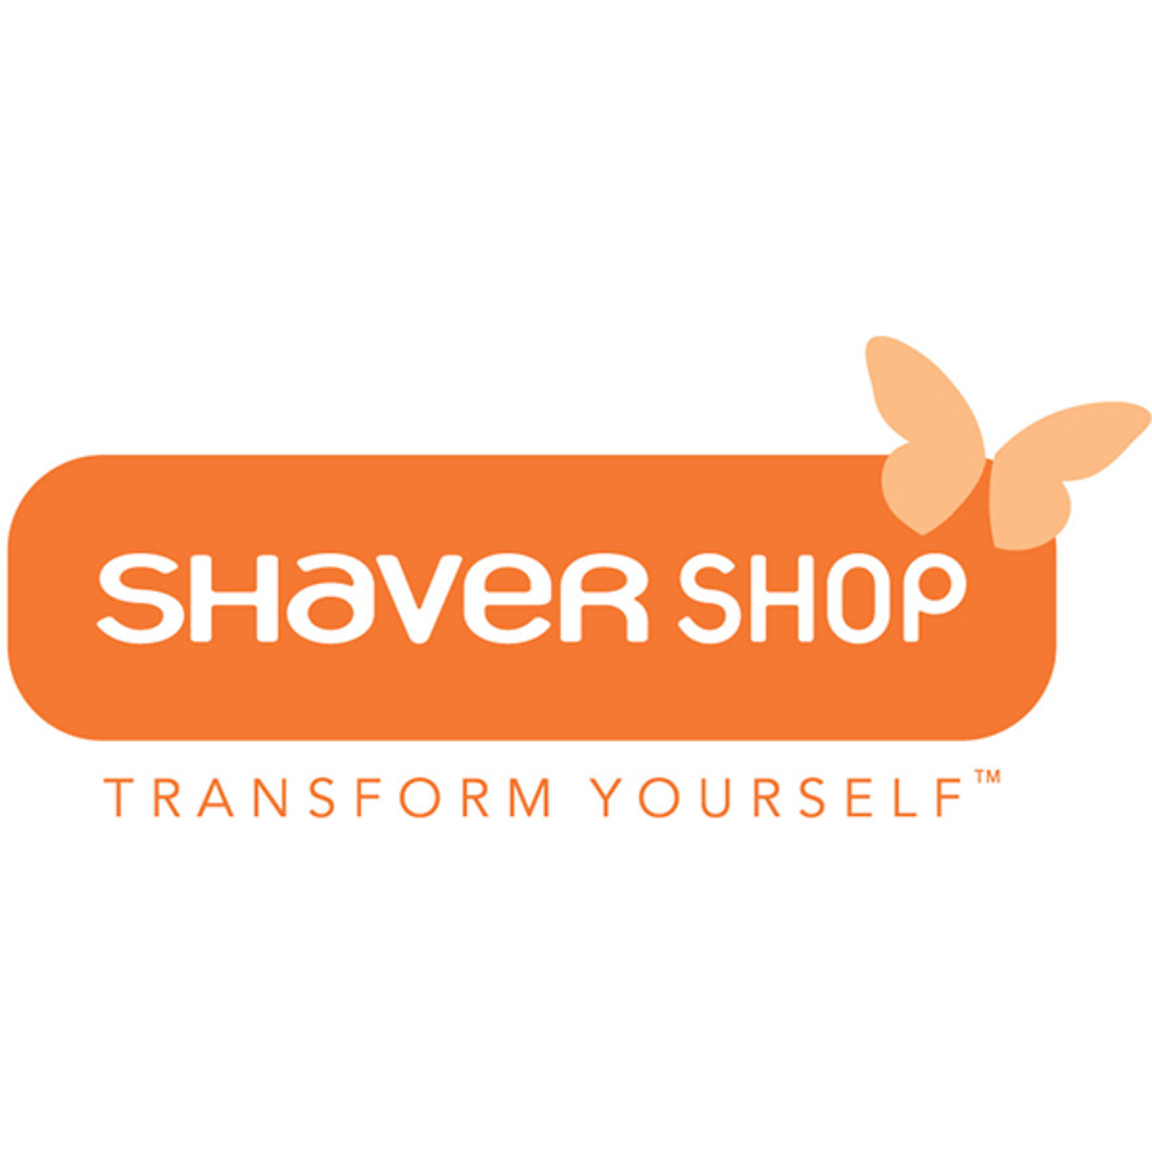 Spring Sale up to 65% off @ Shaver Shop